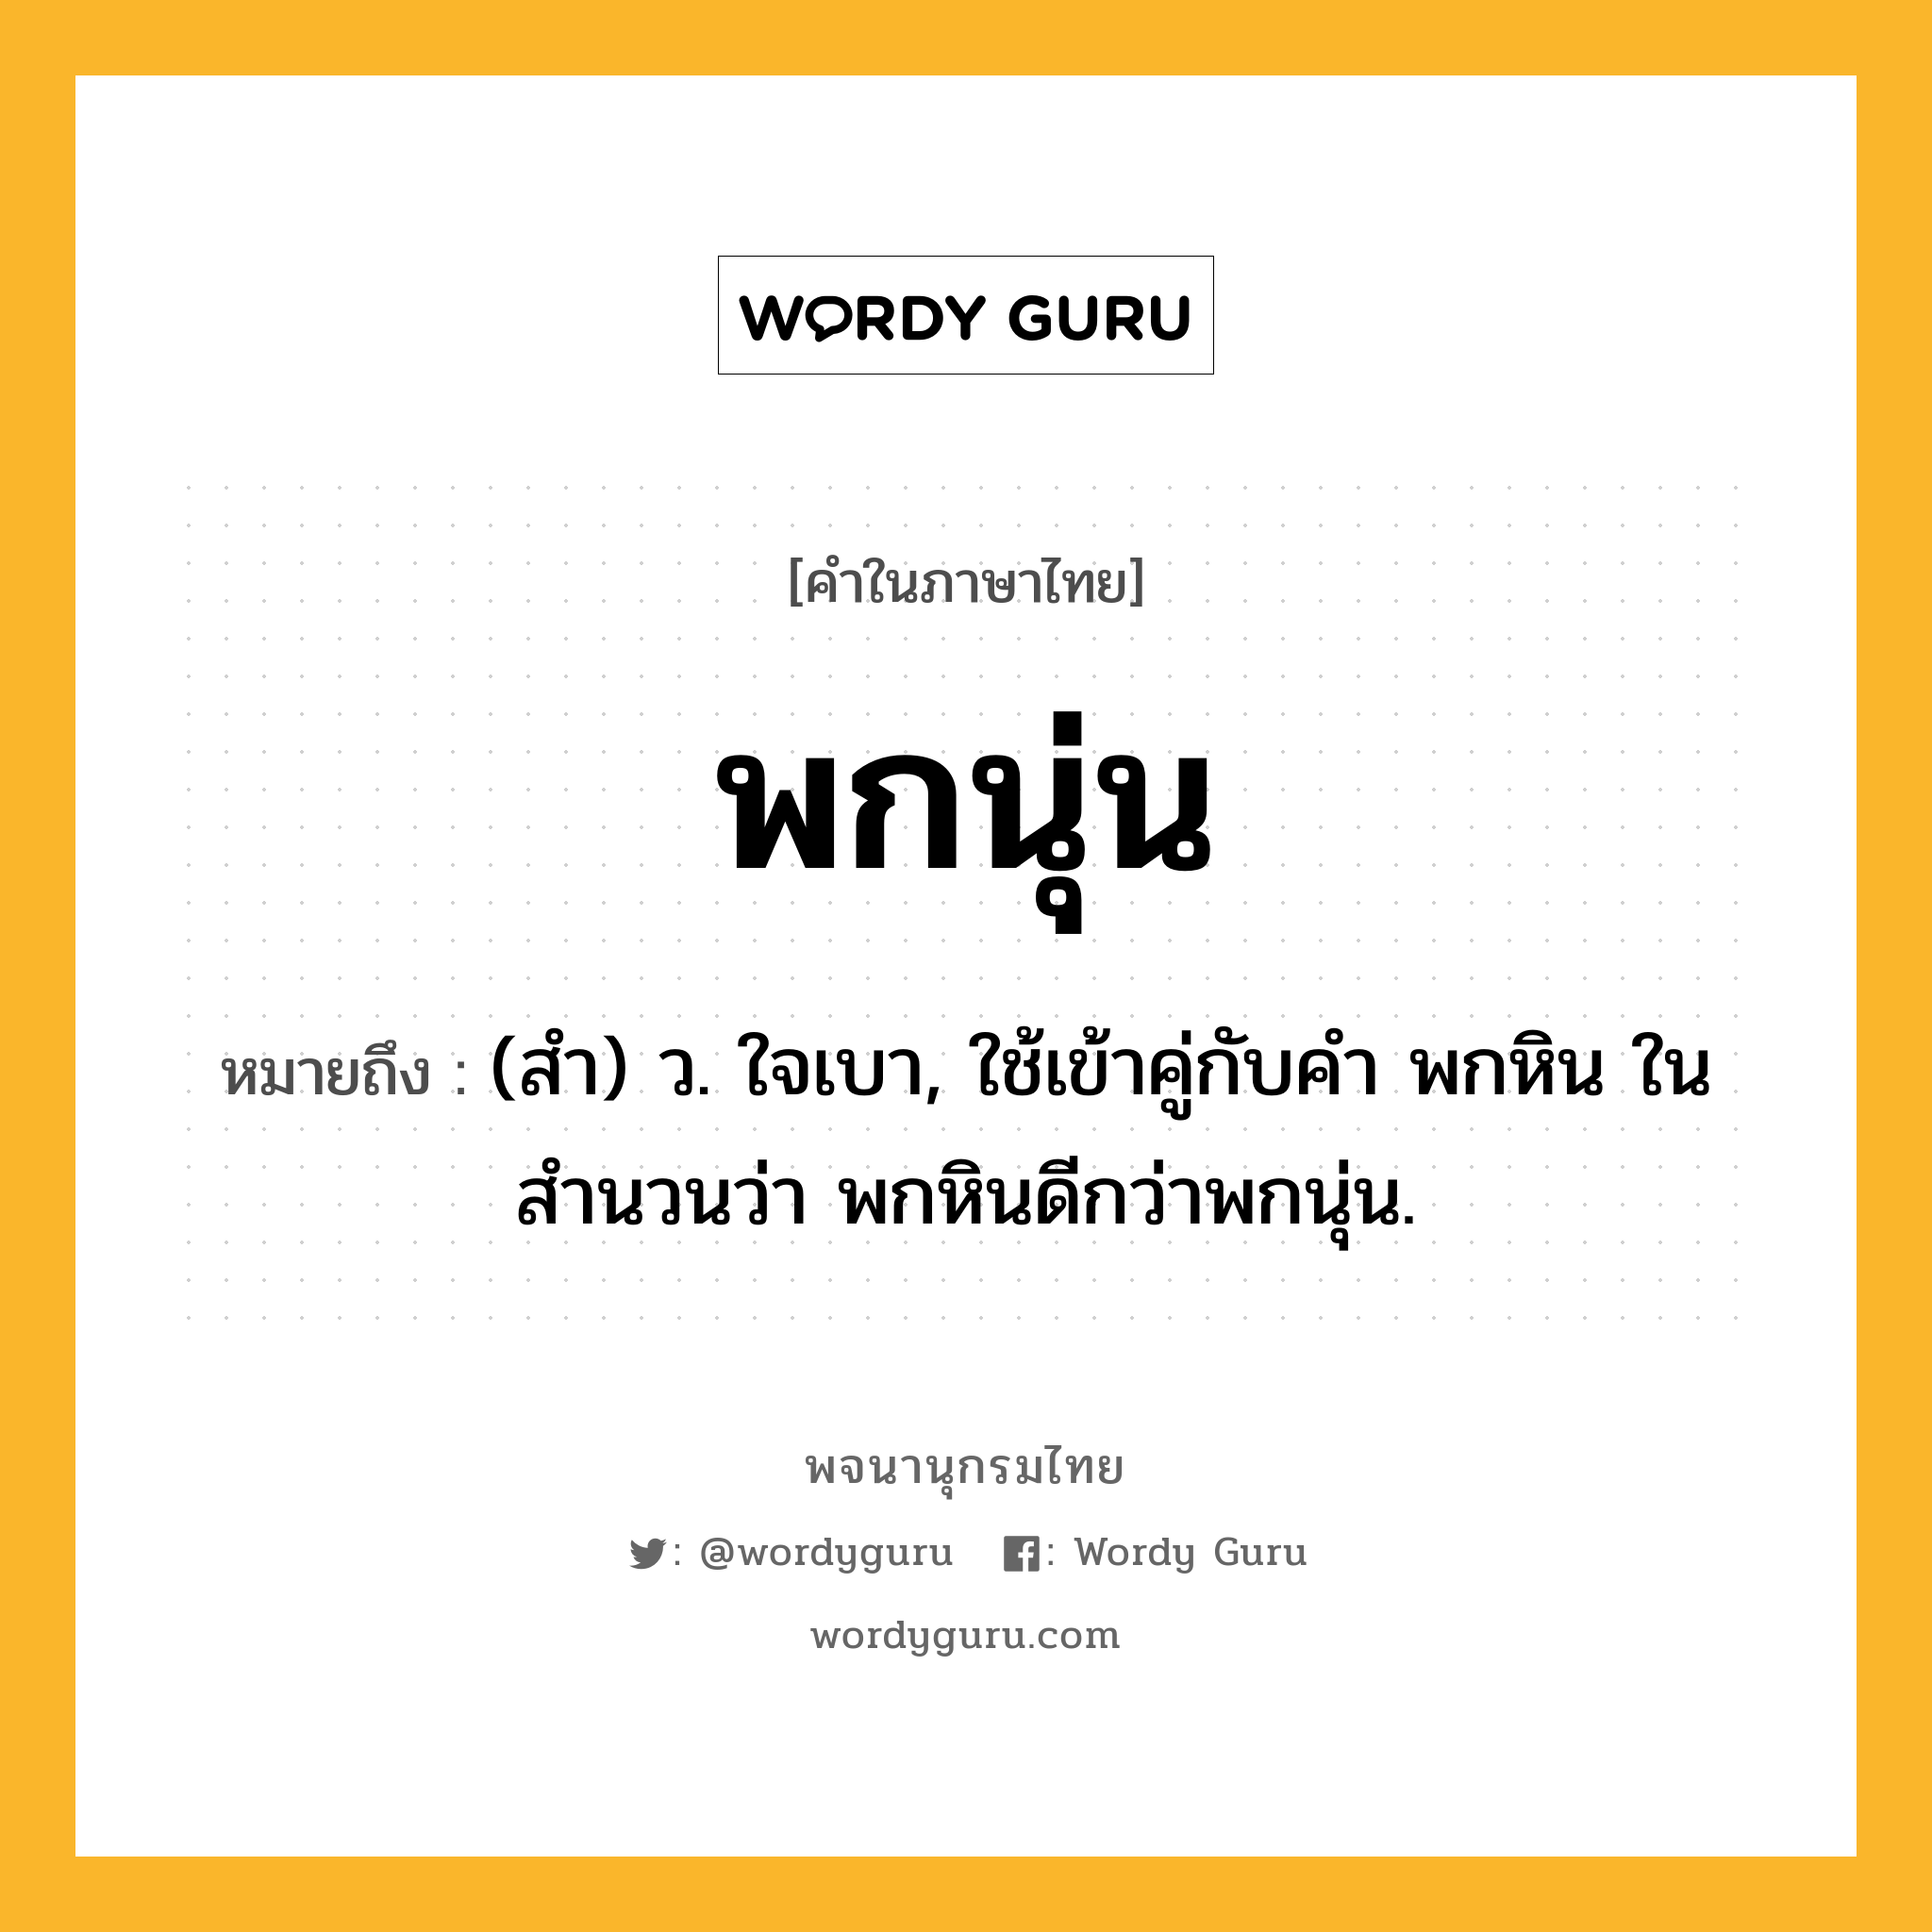 พกนุ่น ความหมาย หมายถึงอะไร?, คำในภาษาไทย พกนุ่น หมายถึง (สํา) ว. ใจเบา, ใช้เข้าคู่กับคำ พกหิน ในสำนวนว่า พกหินดีกว่าพกนุ่น.